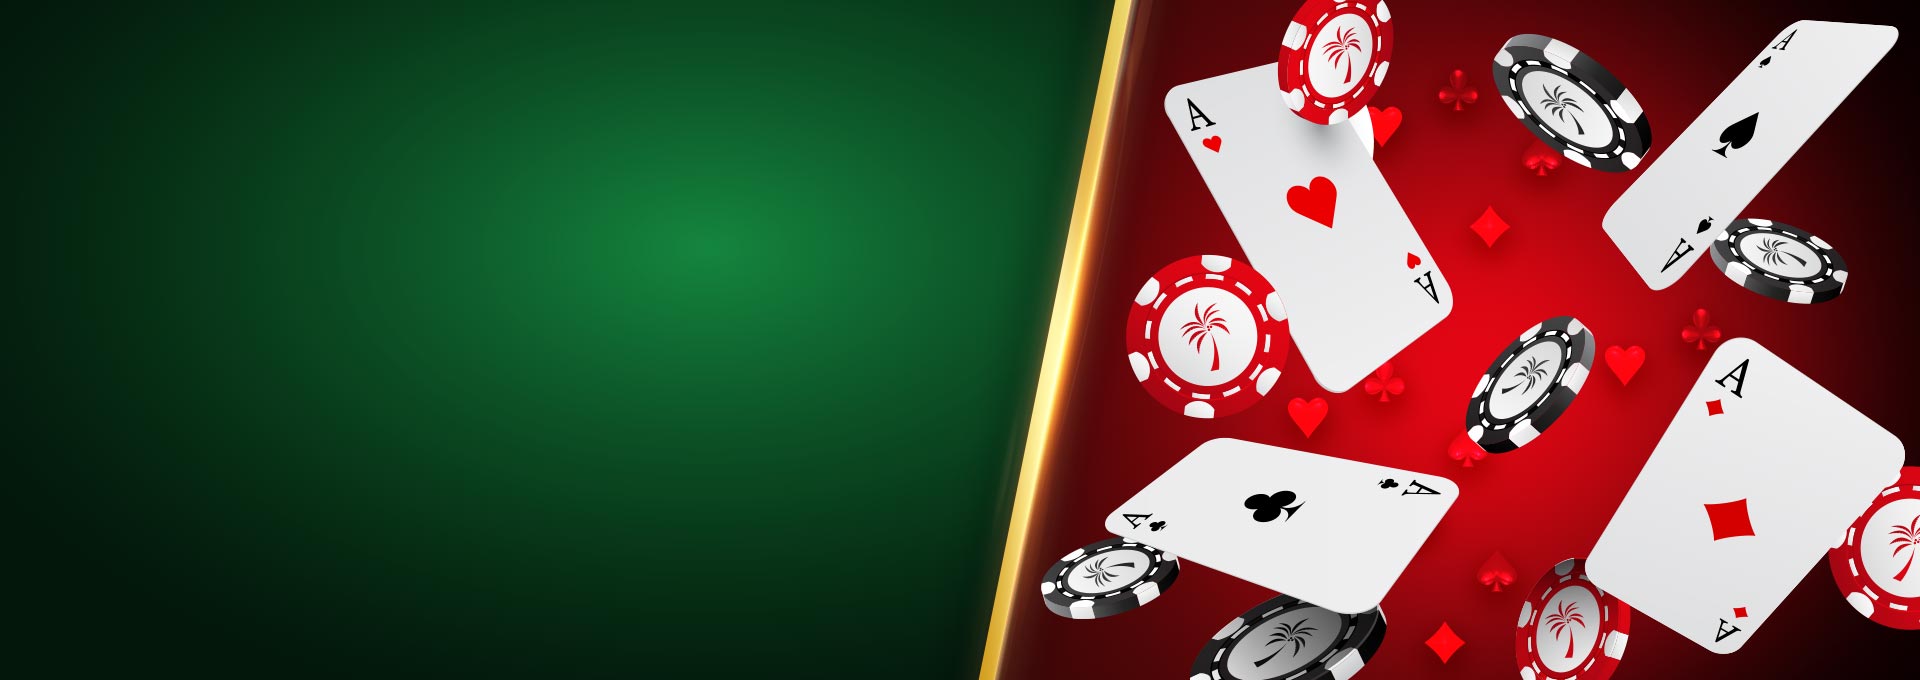 Os 10 melhores casinos do panama